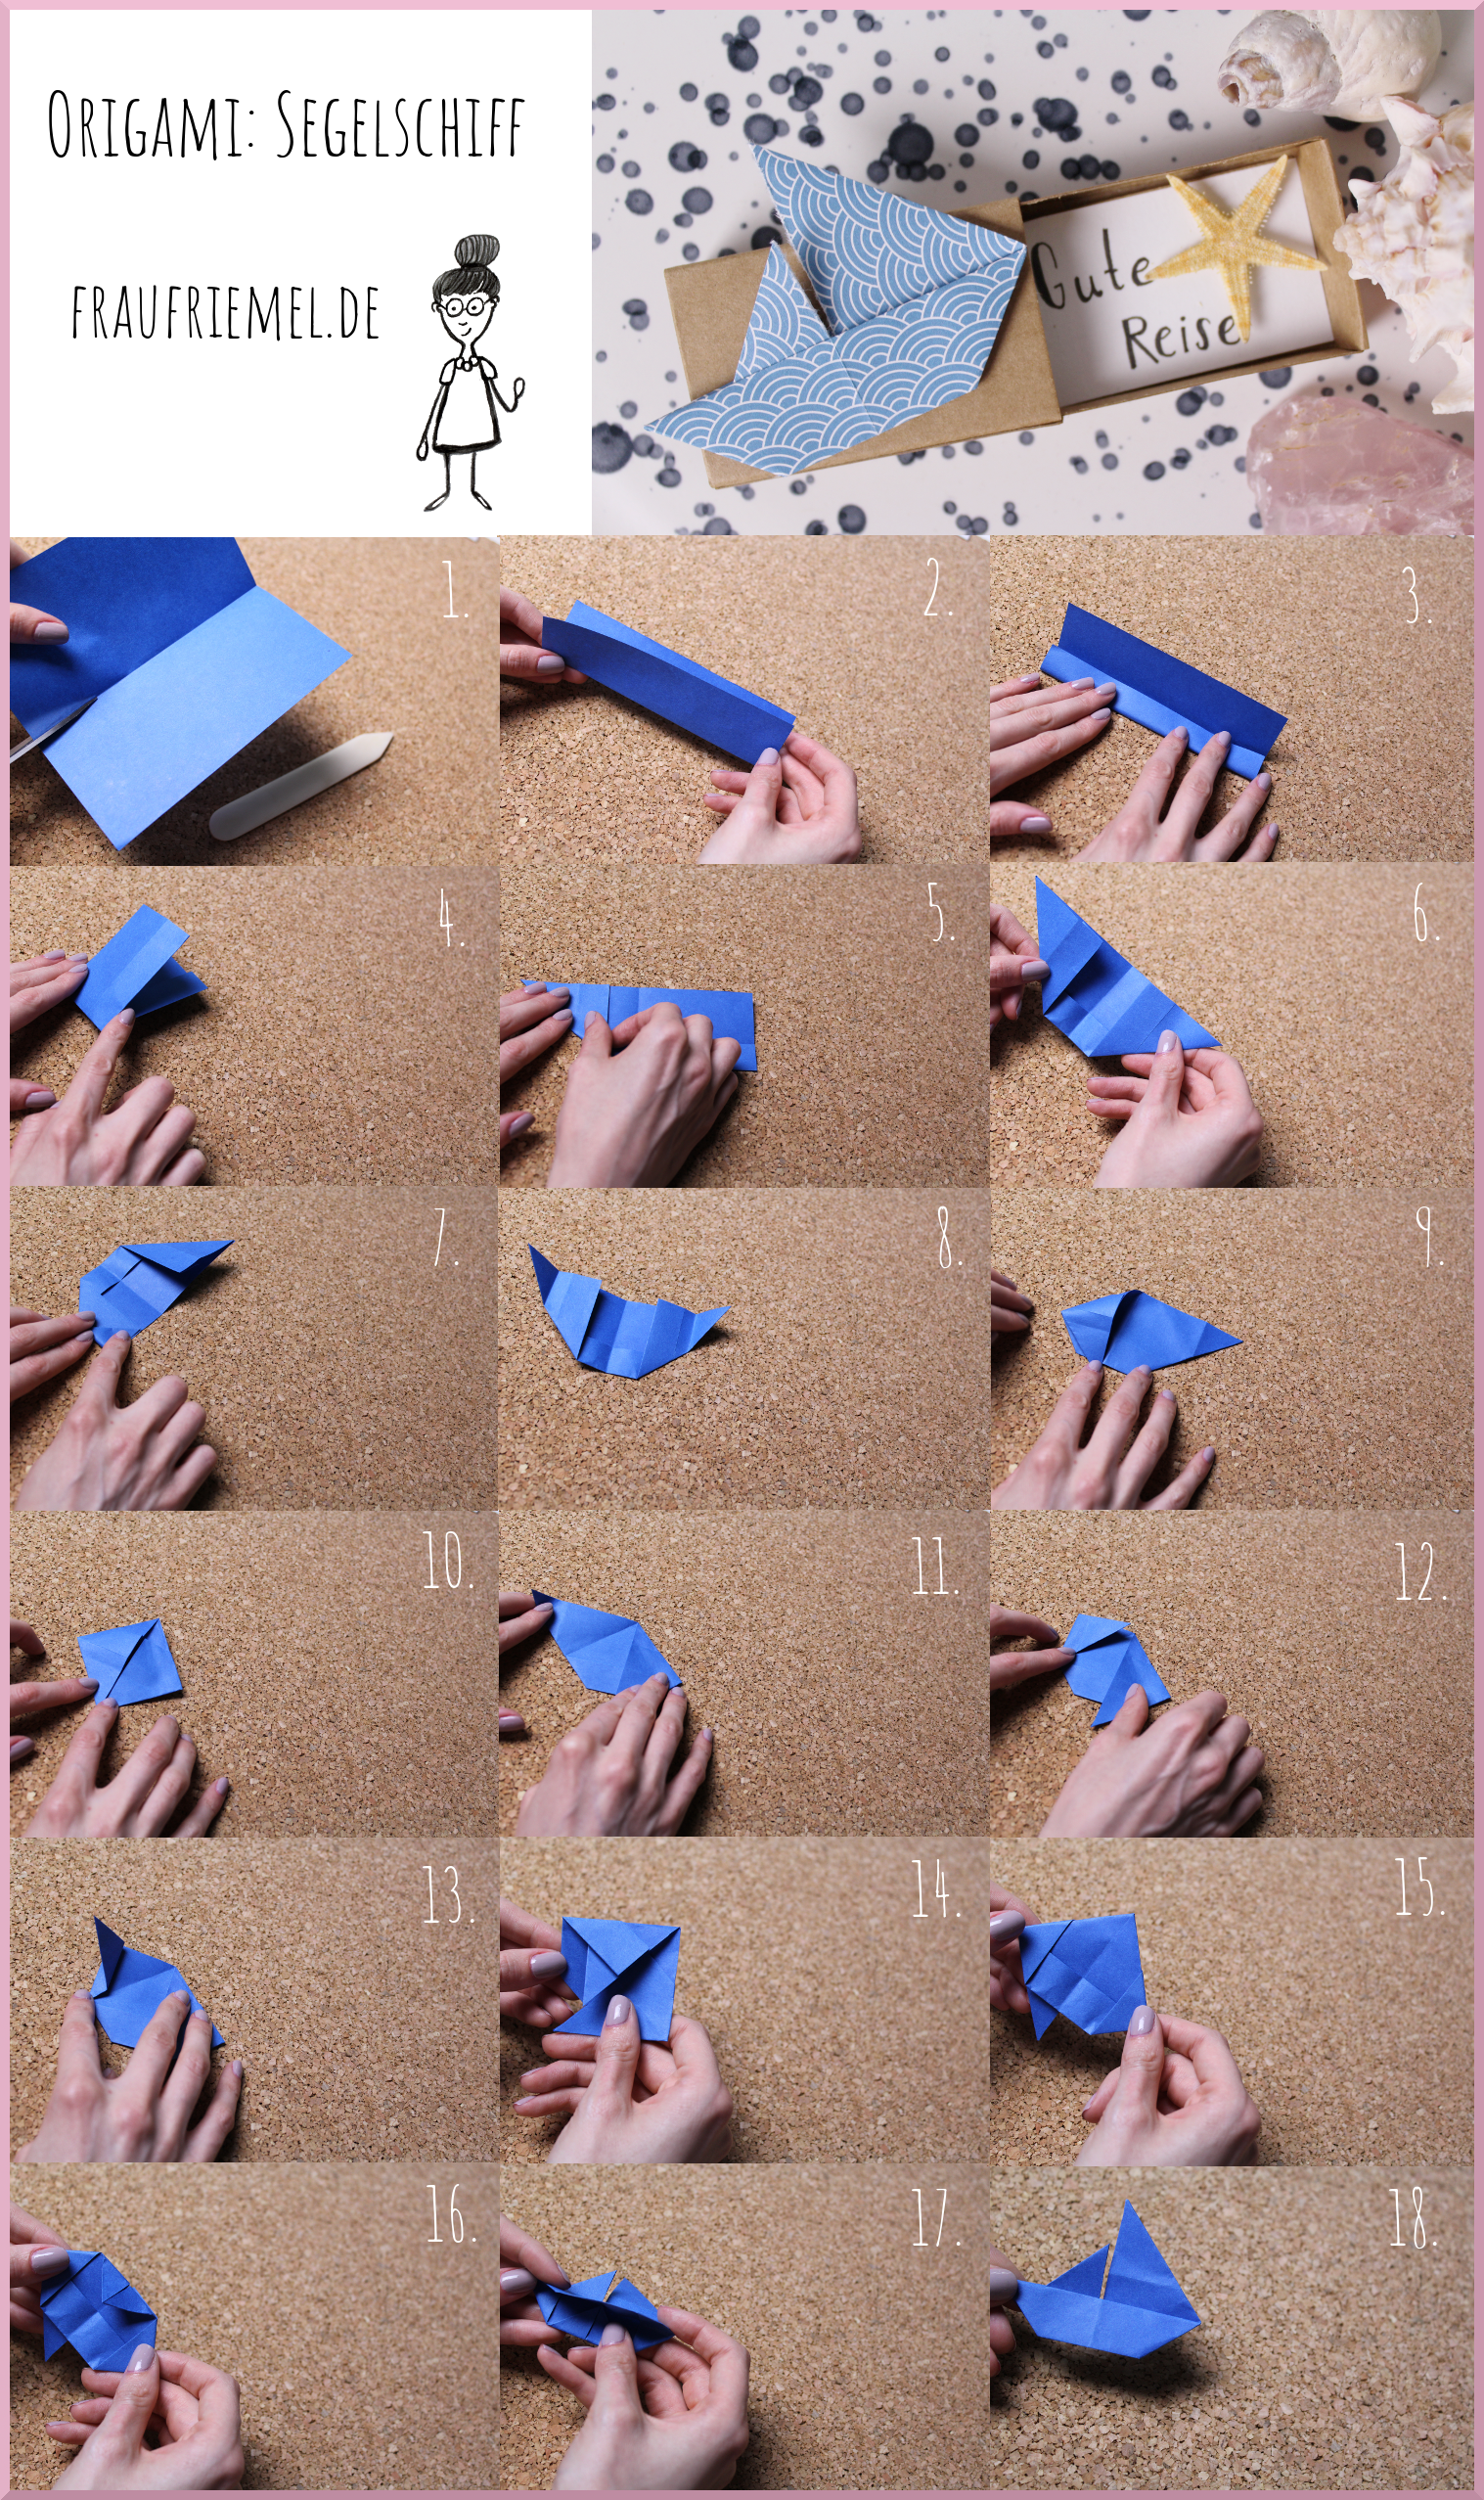 Origami Segelschiff Schritt-für-Schritt-Anleitung von frau friemel